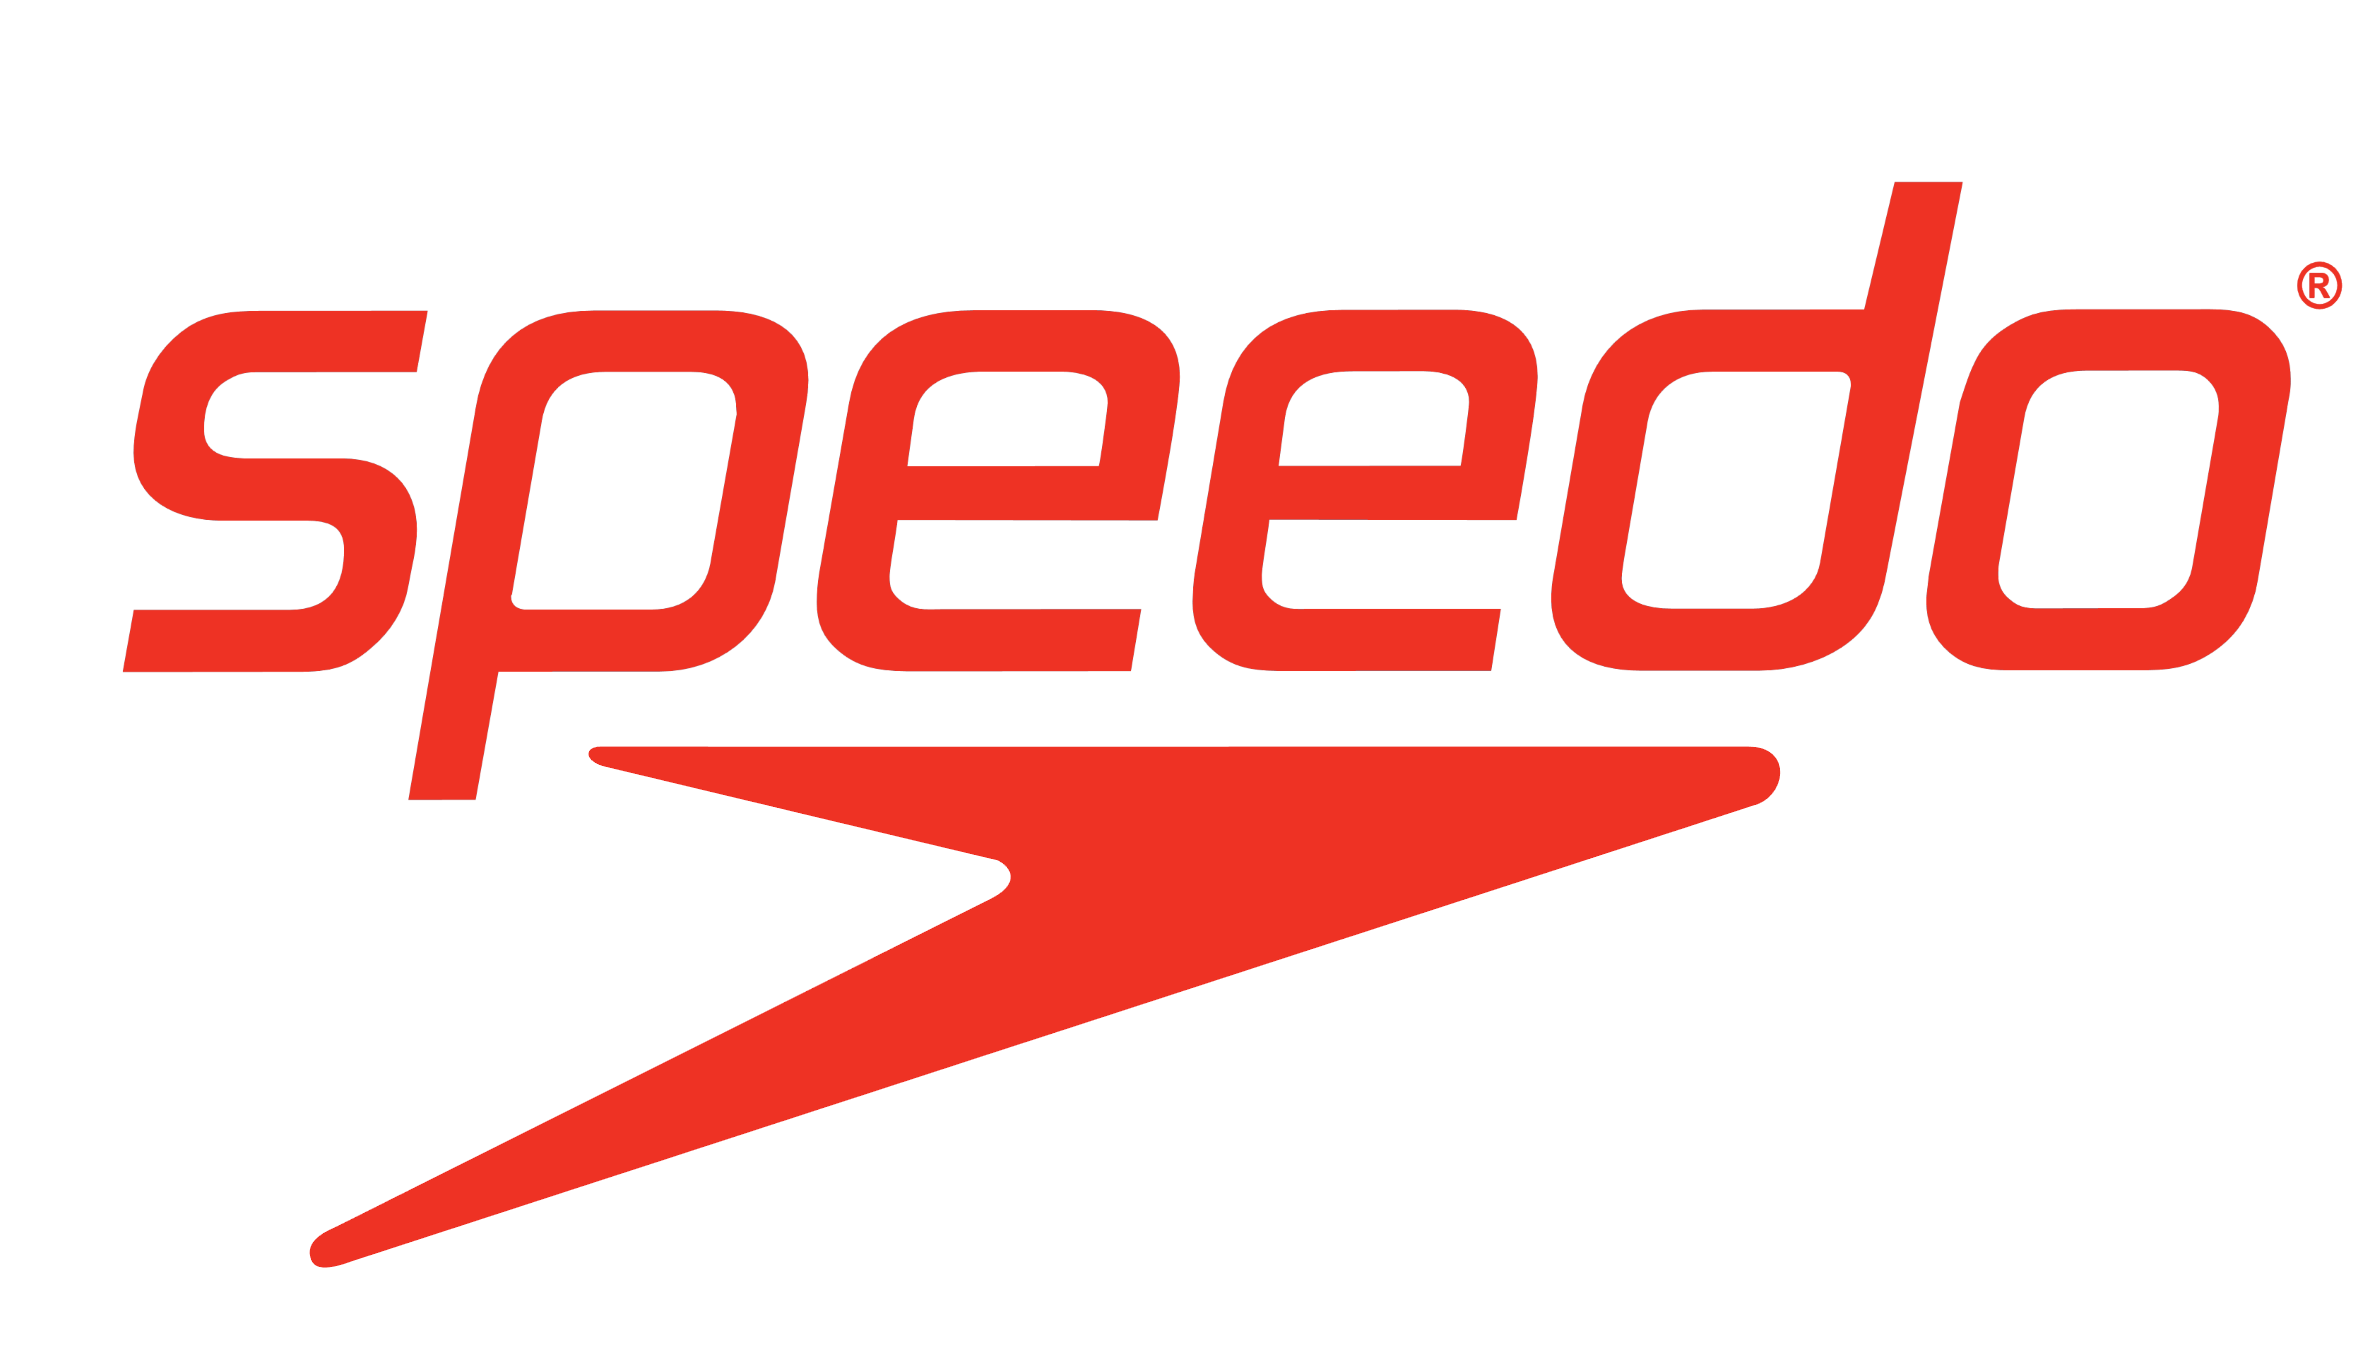 Speedo_logotype_logo_emblem_symbol_red.png